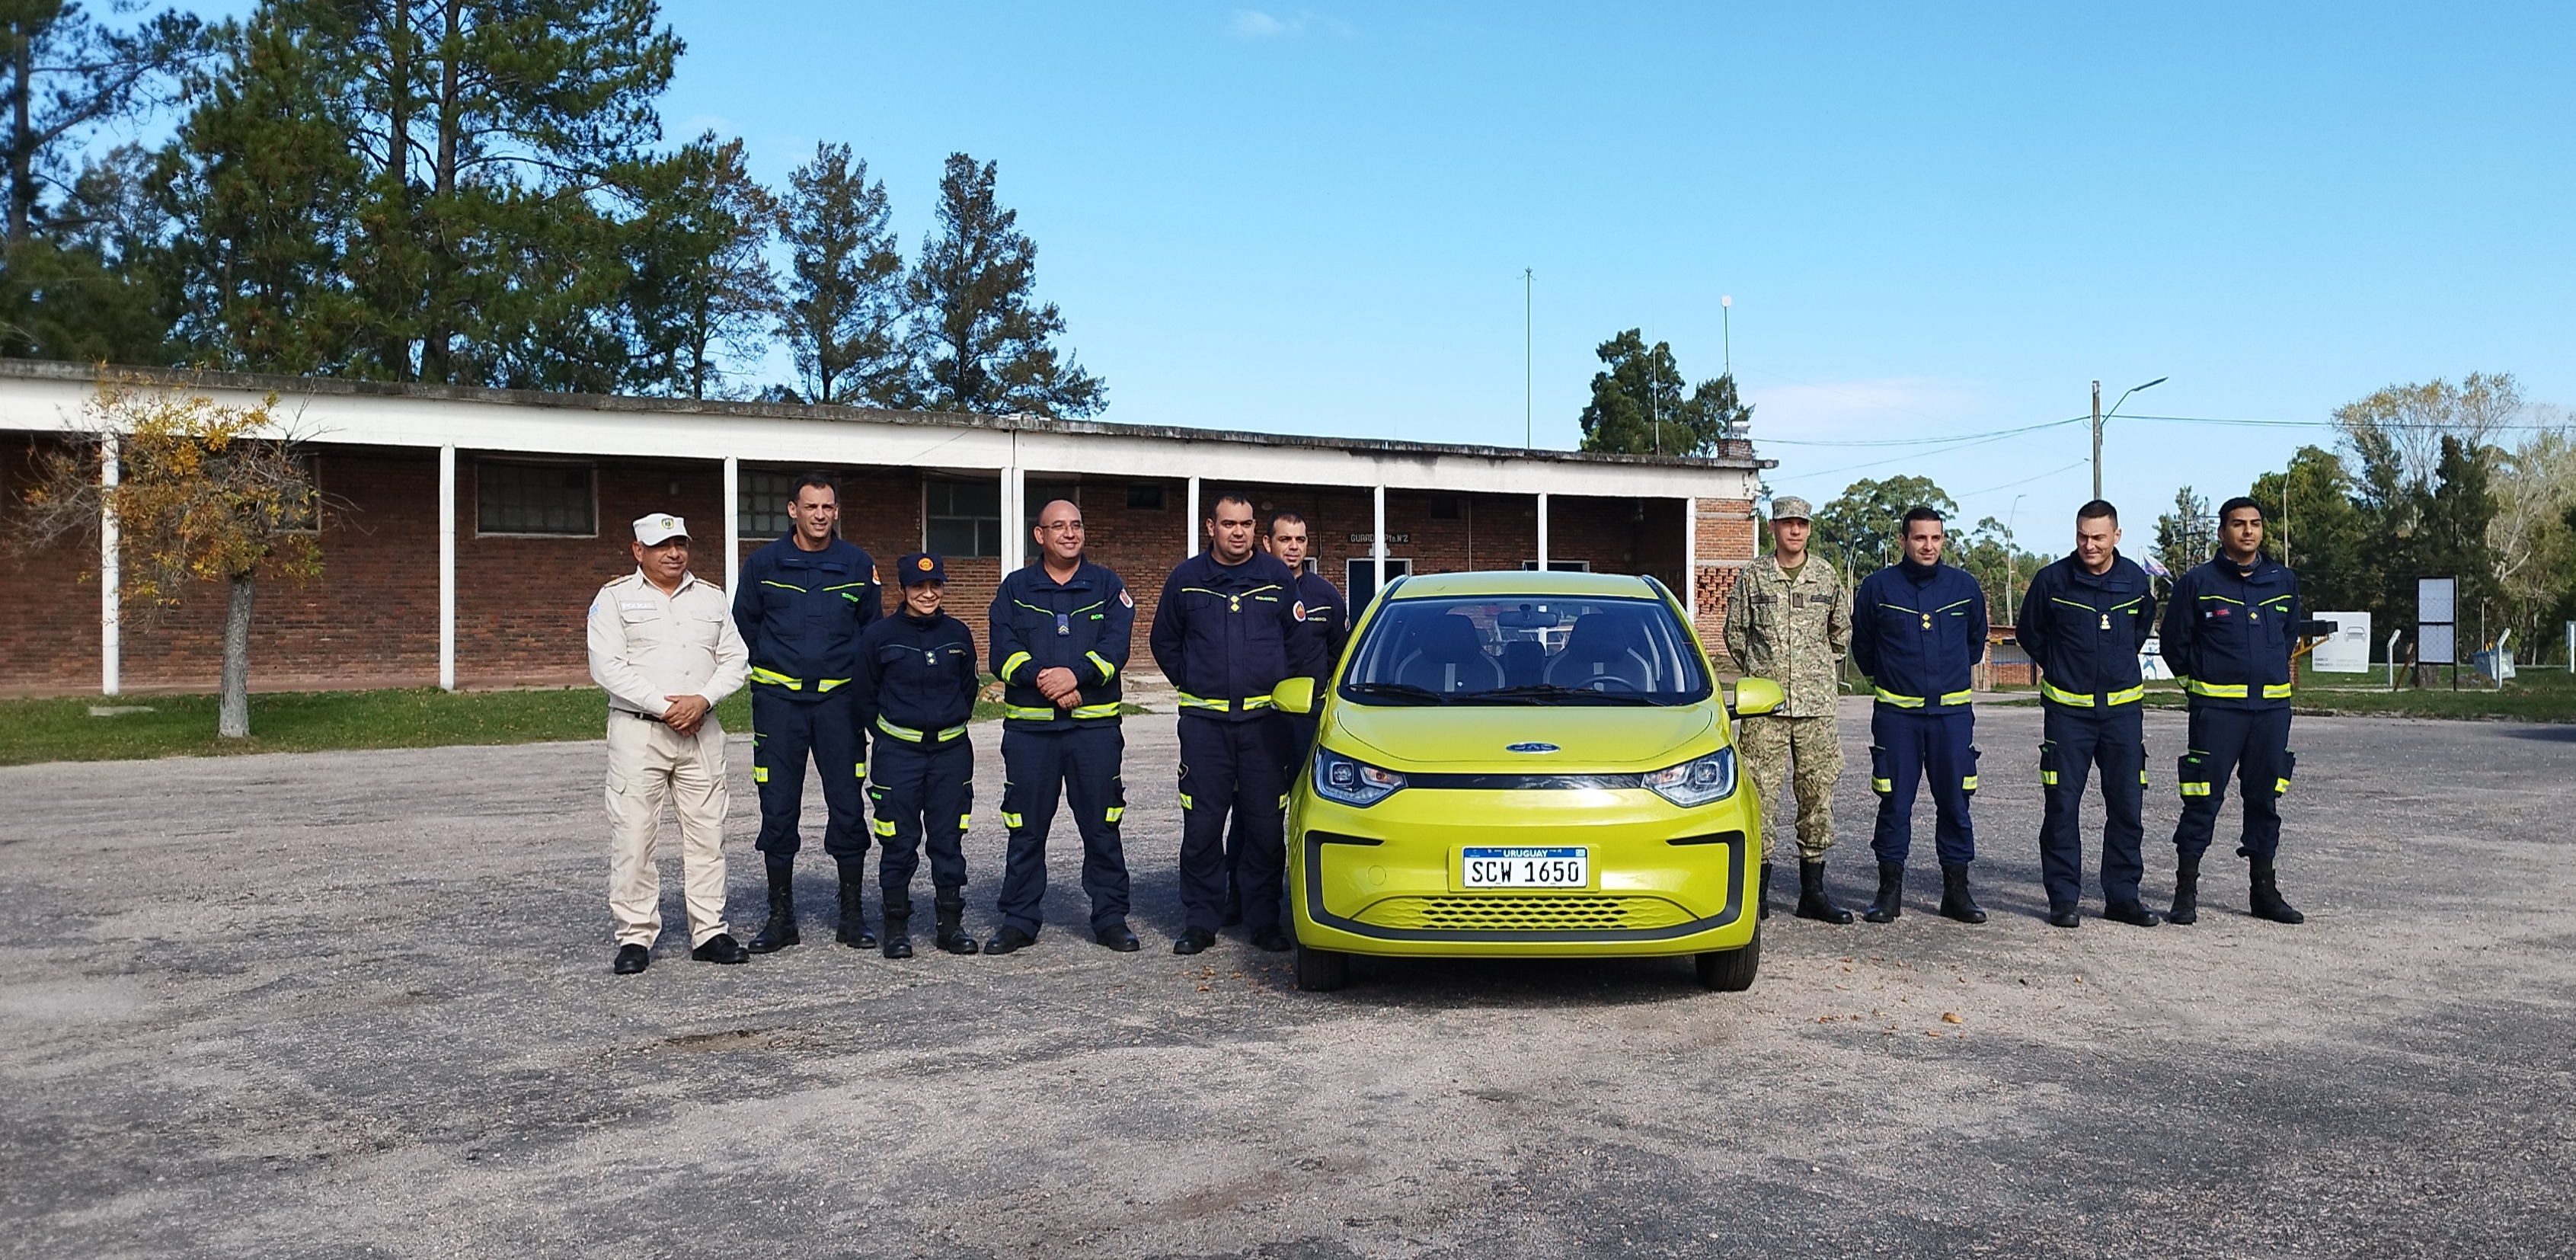 IMG_20230511_132528-HvSrpQiB.jpg - El pasado jueves 11 de mayo culminó la &#034;Capacitación para bomberos sobre manejo de incidentes relacionados con la movilidad eléctrica&#034; en donde se capacitaron a 25 bomberos en la Base Aérea de Santa Bernardina del departamento de Durazno. Esta capacitación es la continuación del primer curso regional que organizó la plataforma MOVE del Programa de la Naciones Unidas para el Medio Ambiente a finales de 2022 en Paraguay, donde participaron y se formaron dos bomberos instructores de Uruguay.